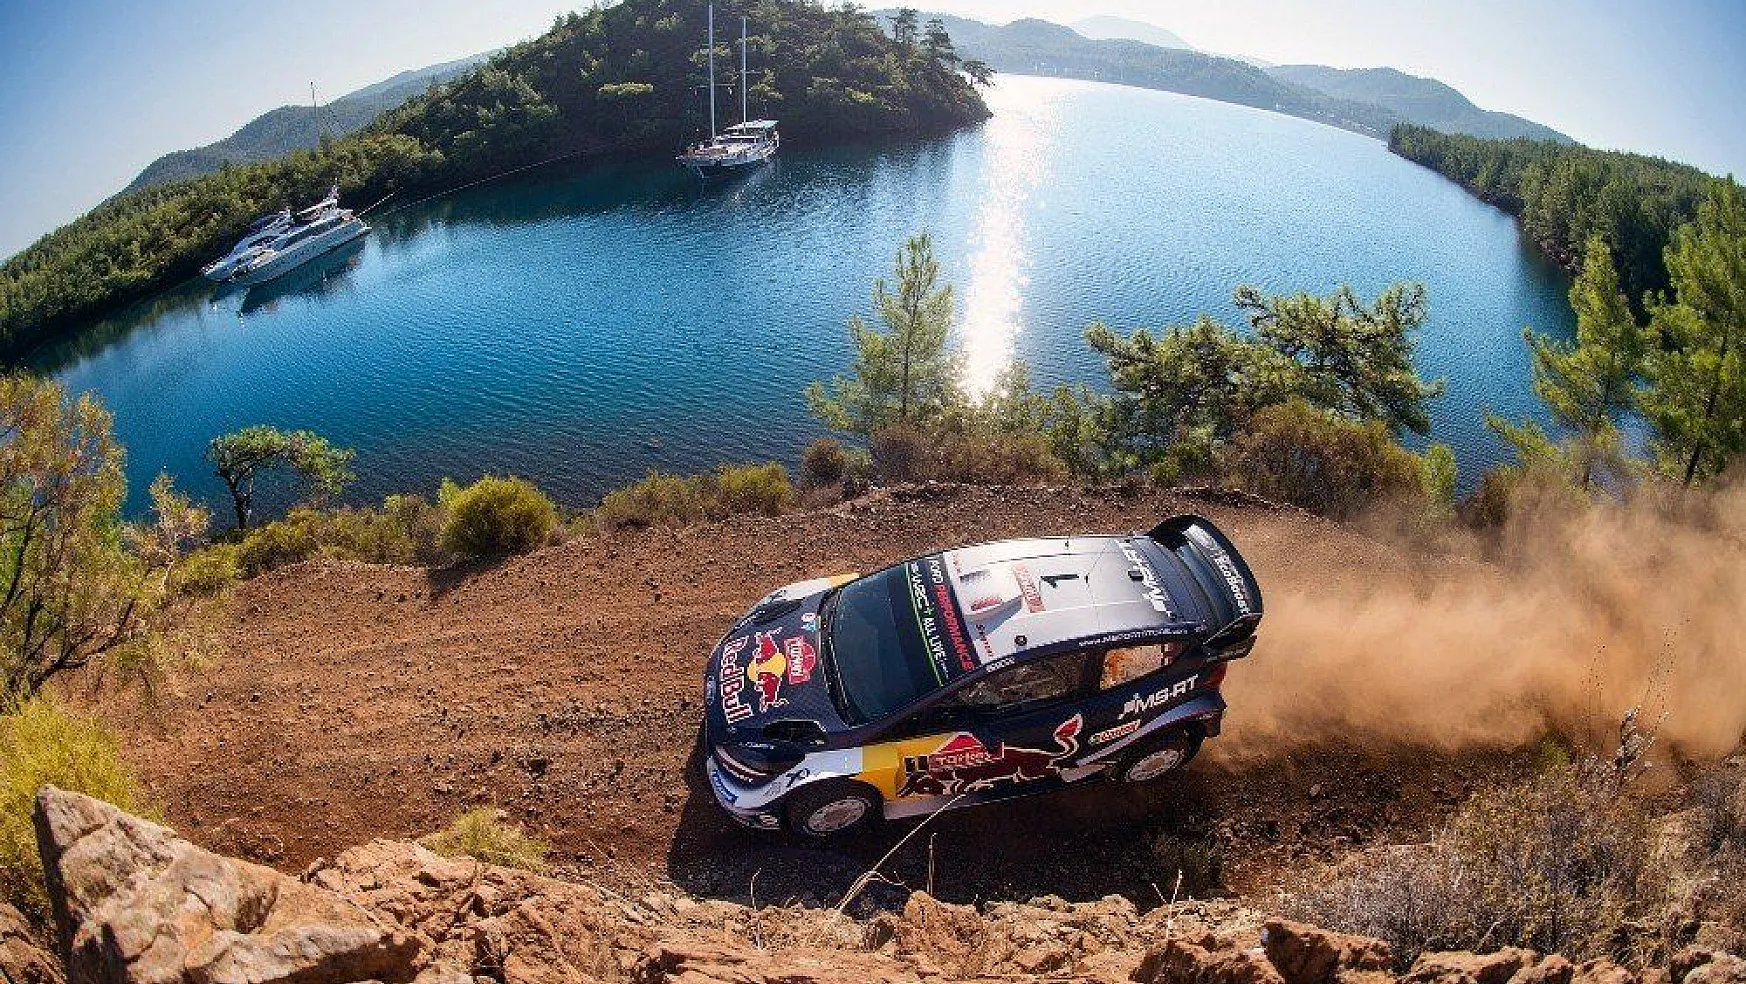 Türkiye Rallisi 11'inci yarış olarak 2019 WRC takviminde